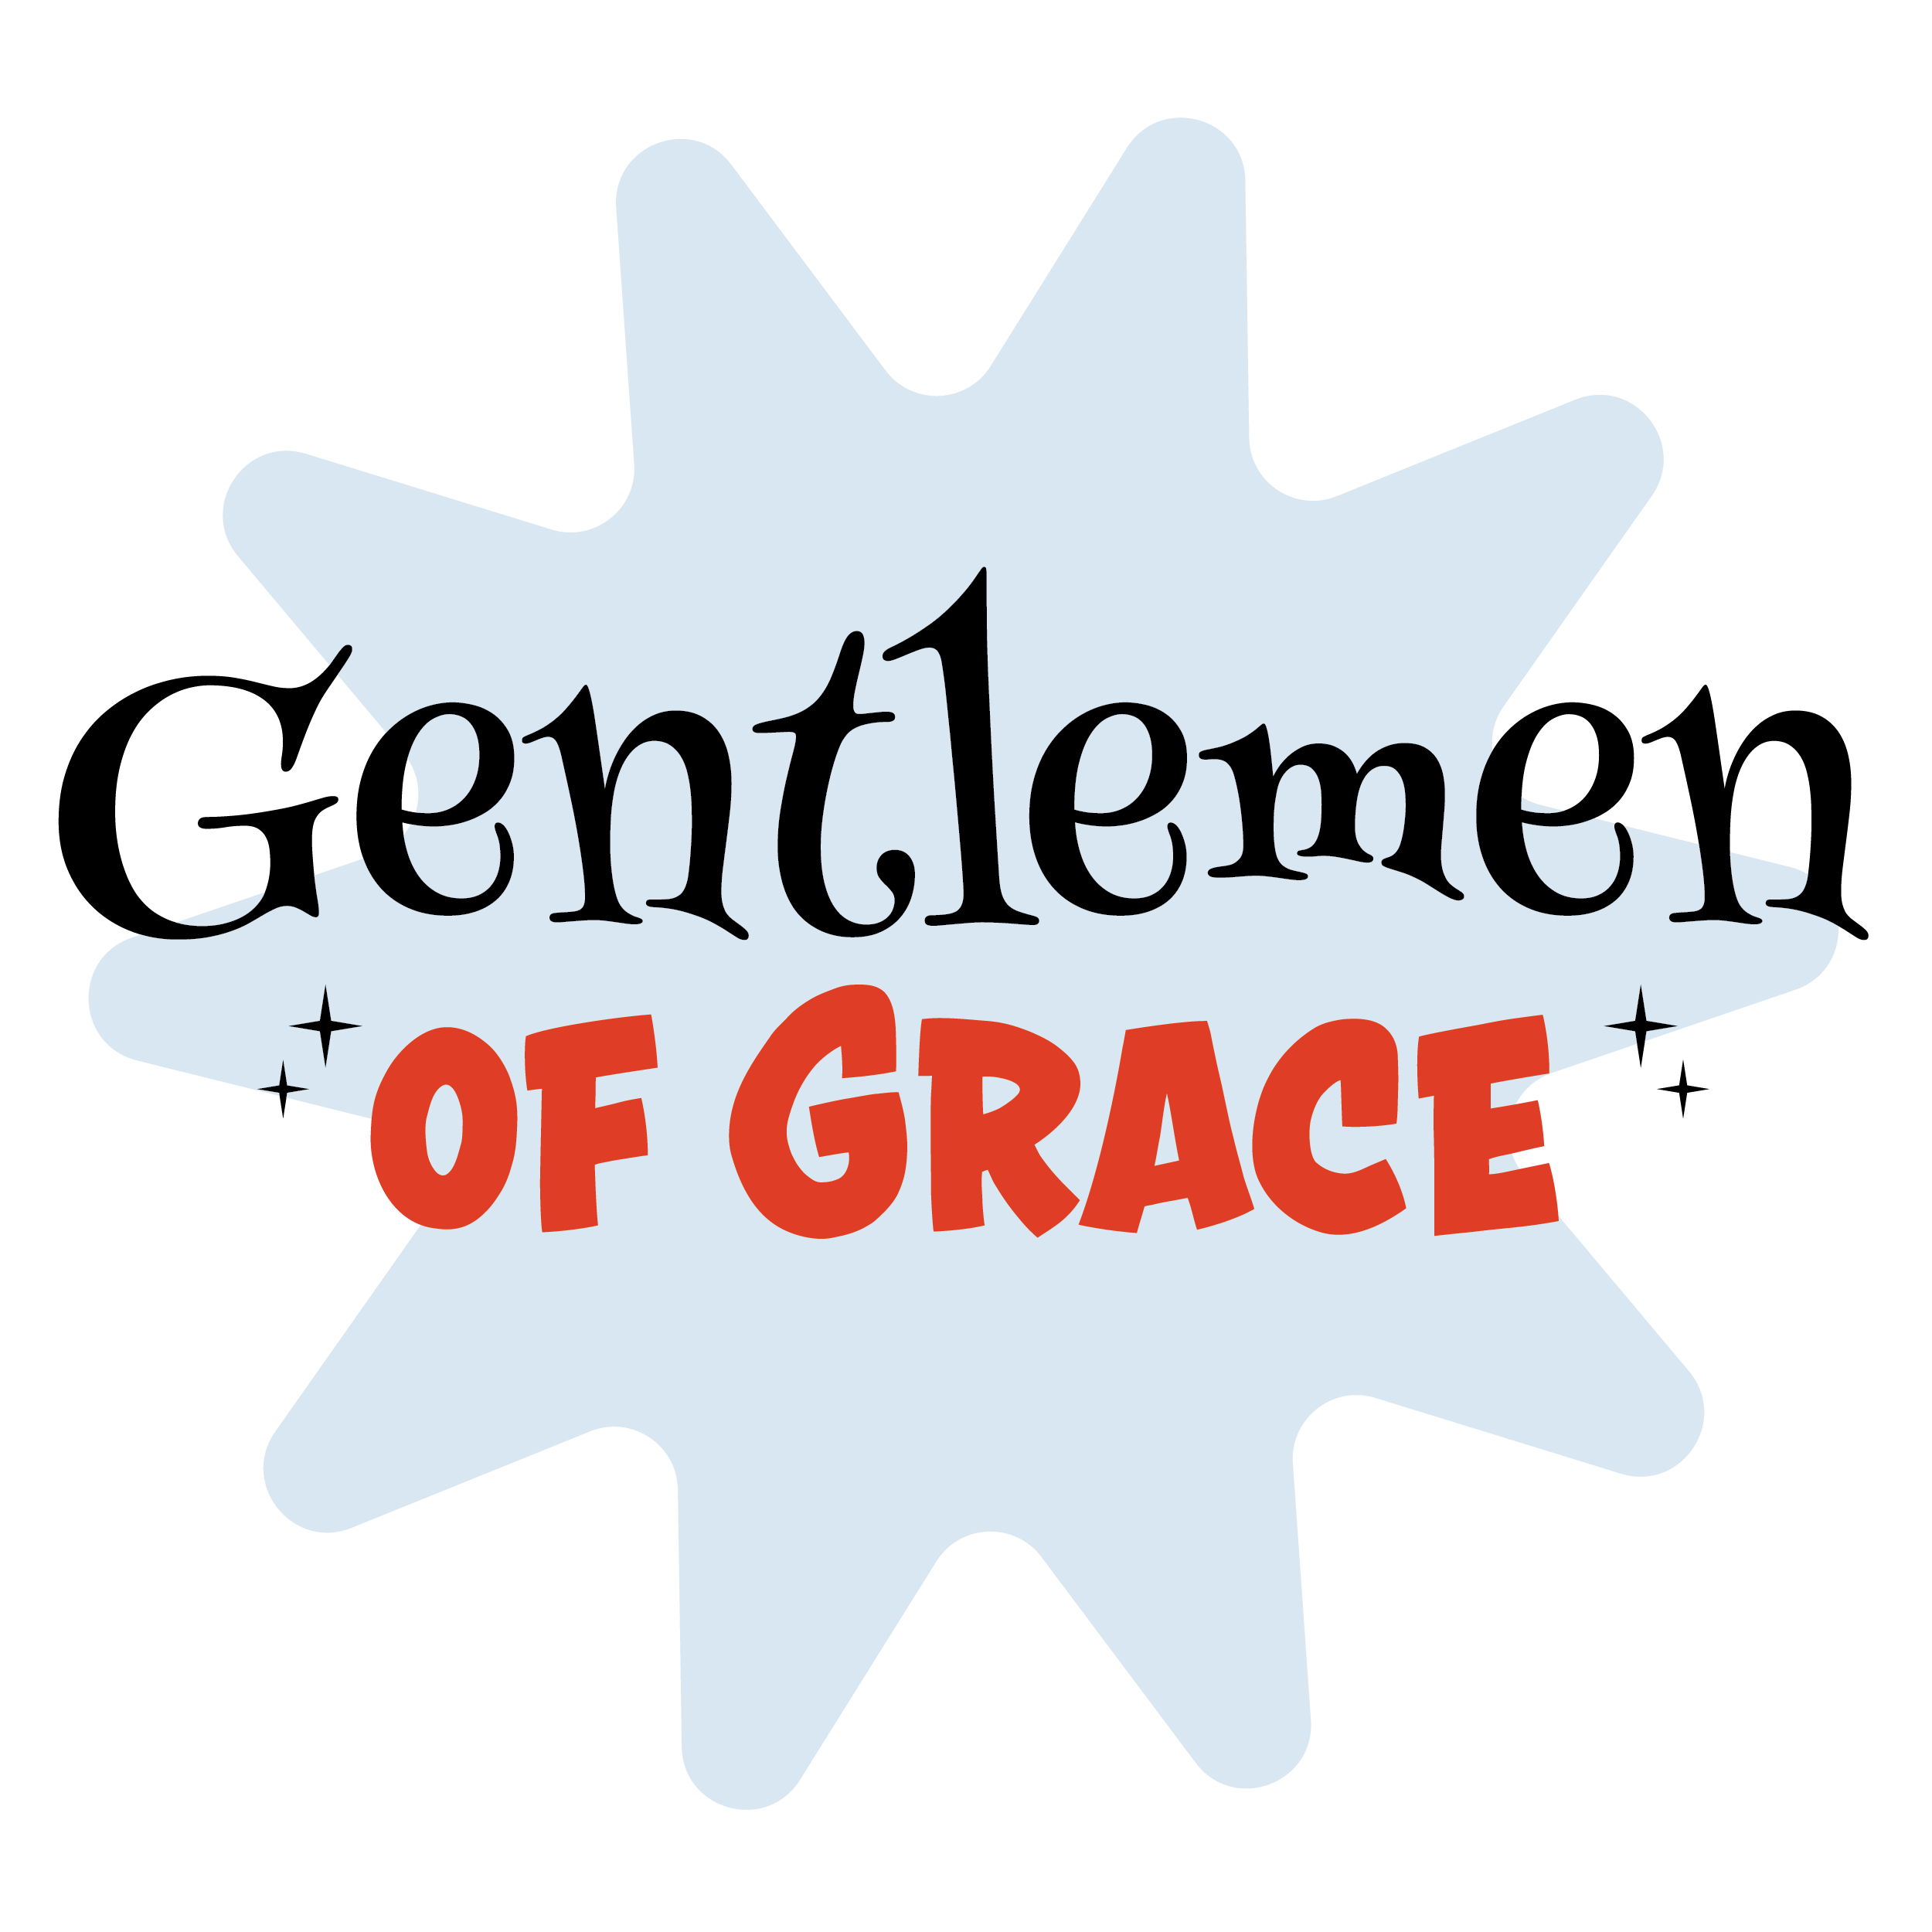 Gentlemen of Grace